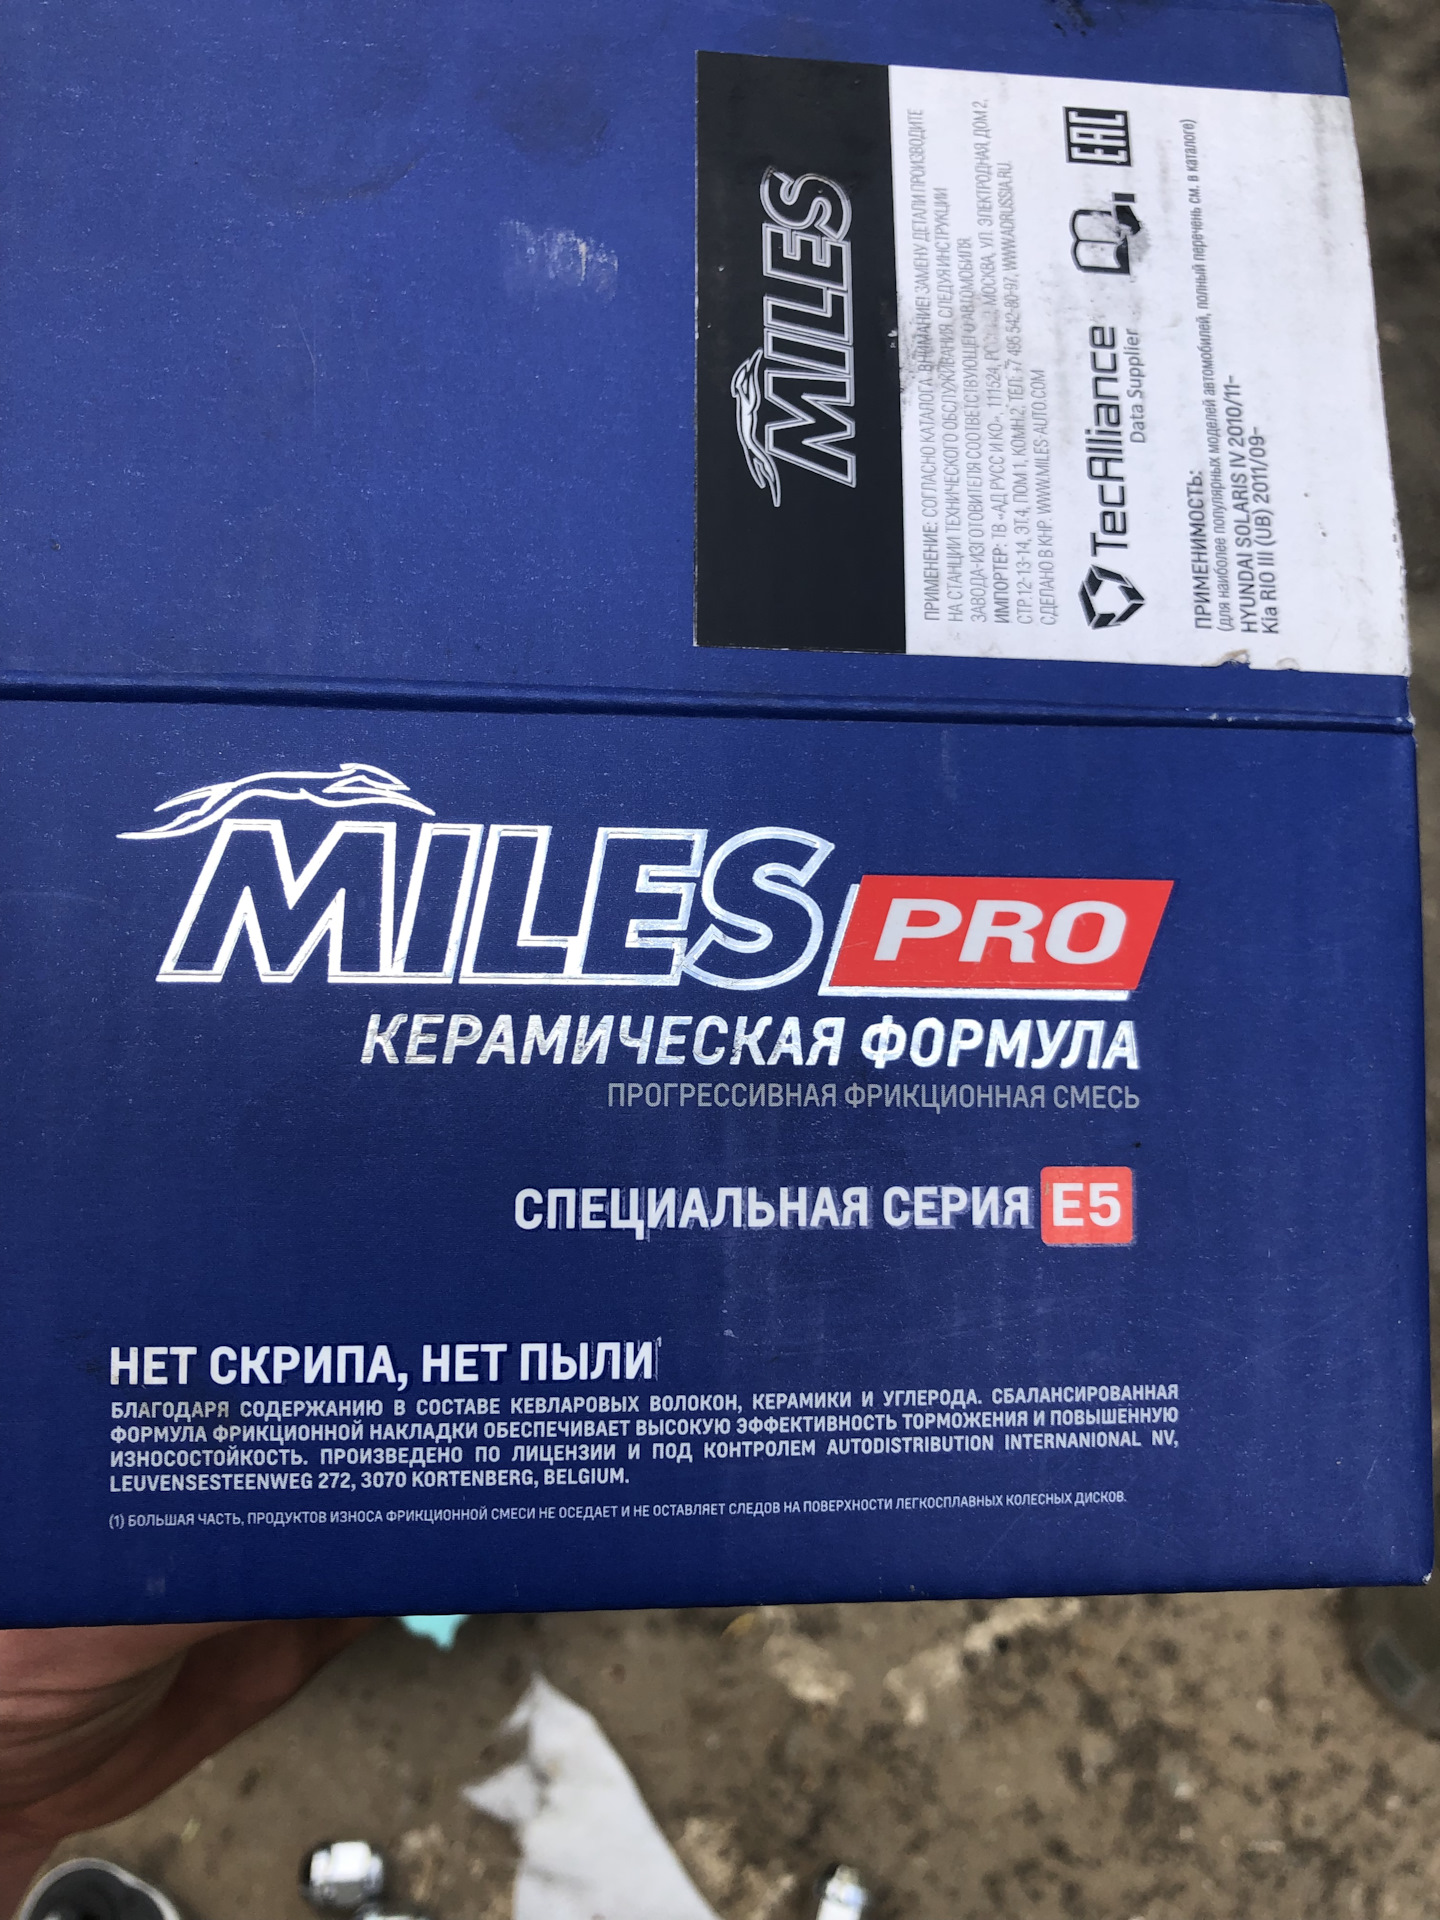 Miles pro. Колодки Miles Pro на гранту спорт. Тормозные диски Miles Pro.